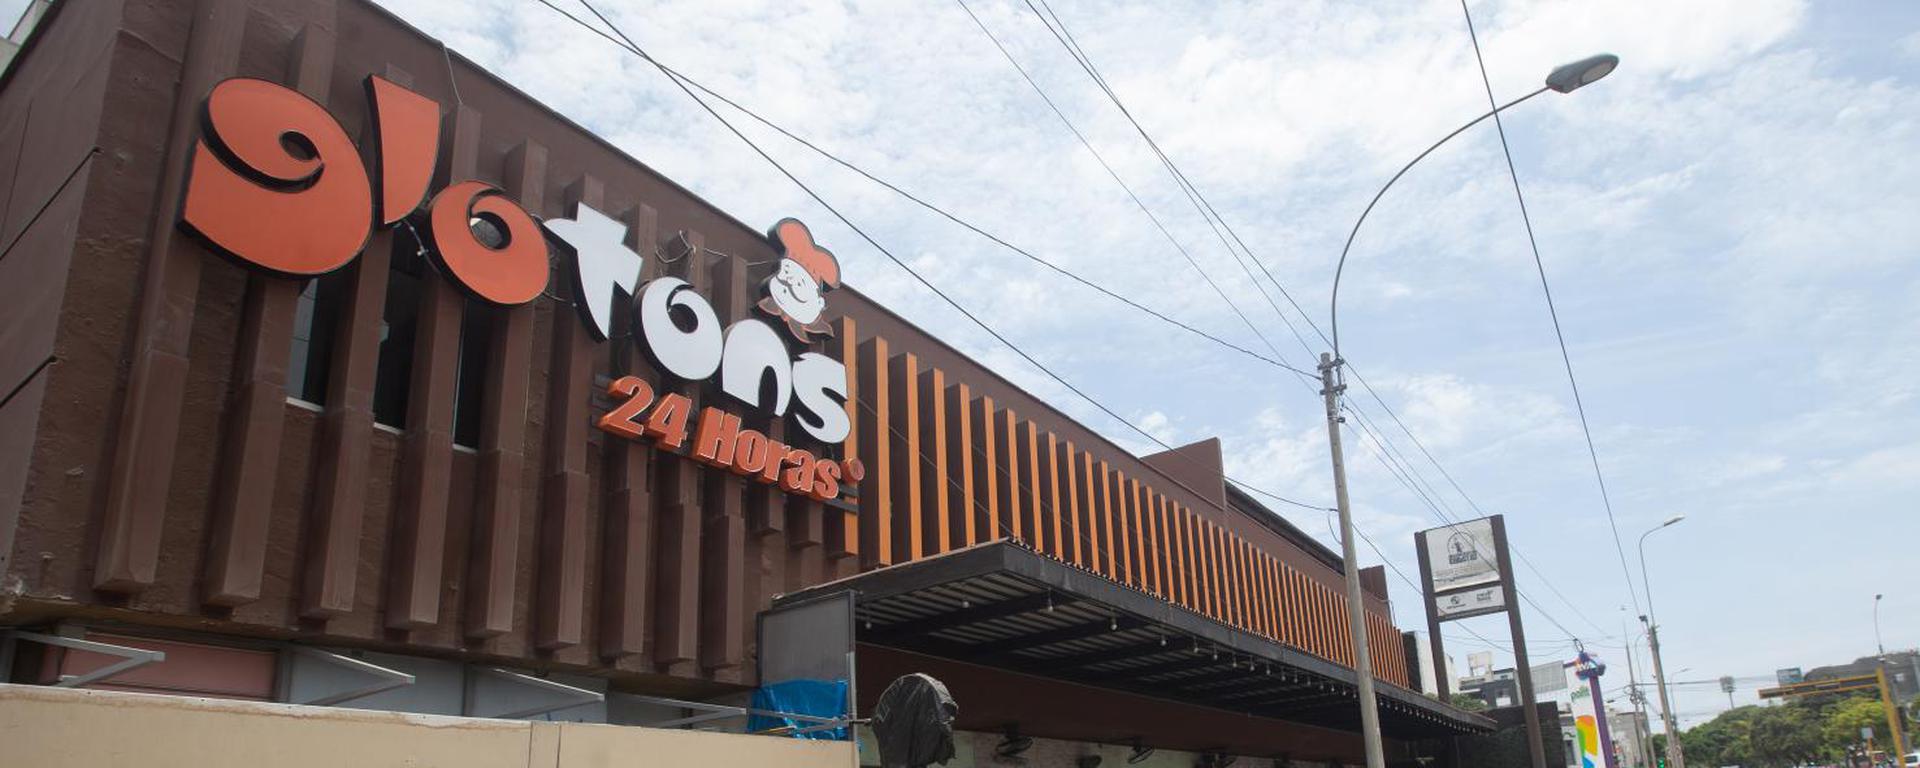 Glotons, el restaurante que nació por una historia de amor y hoy celebra 30 años de platos contundentes las 24 horas 